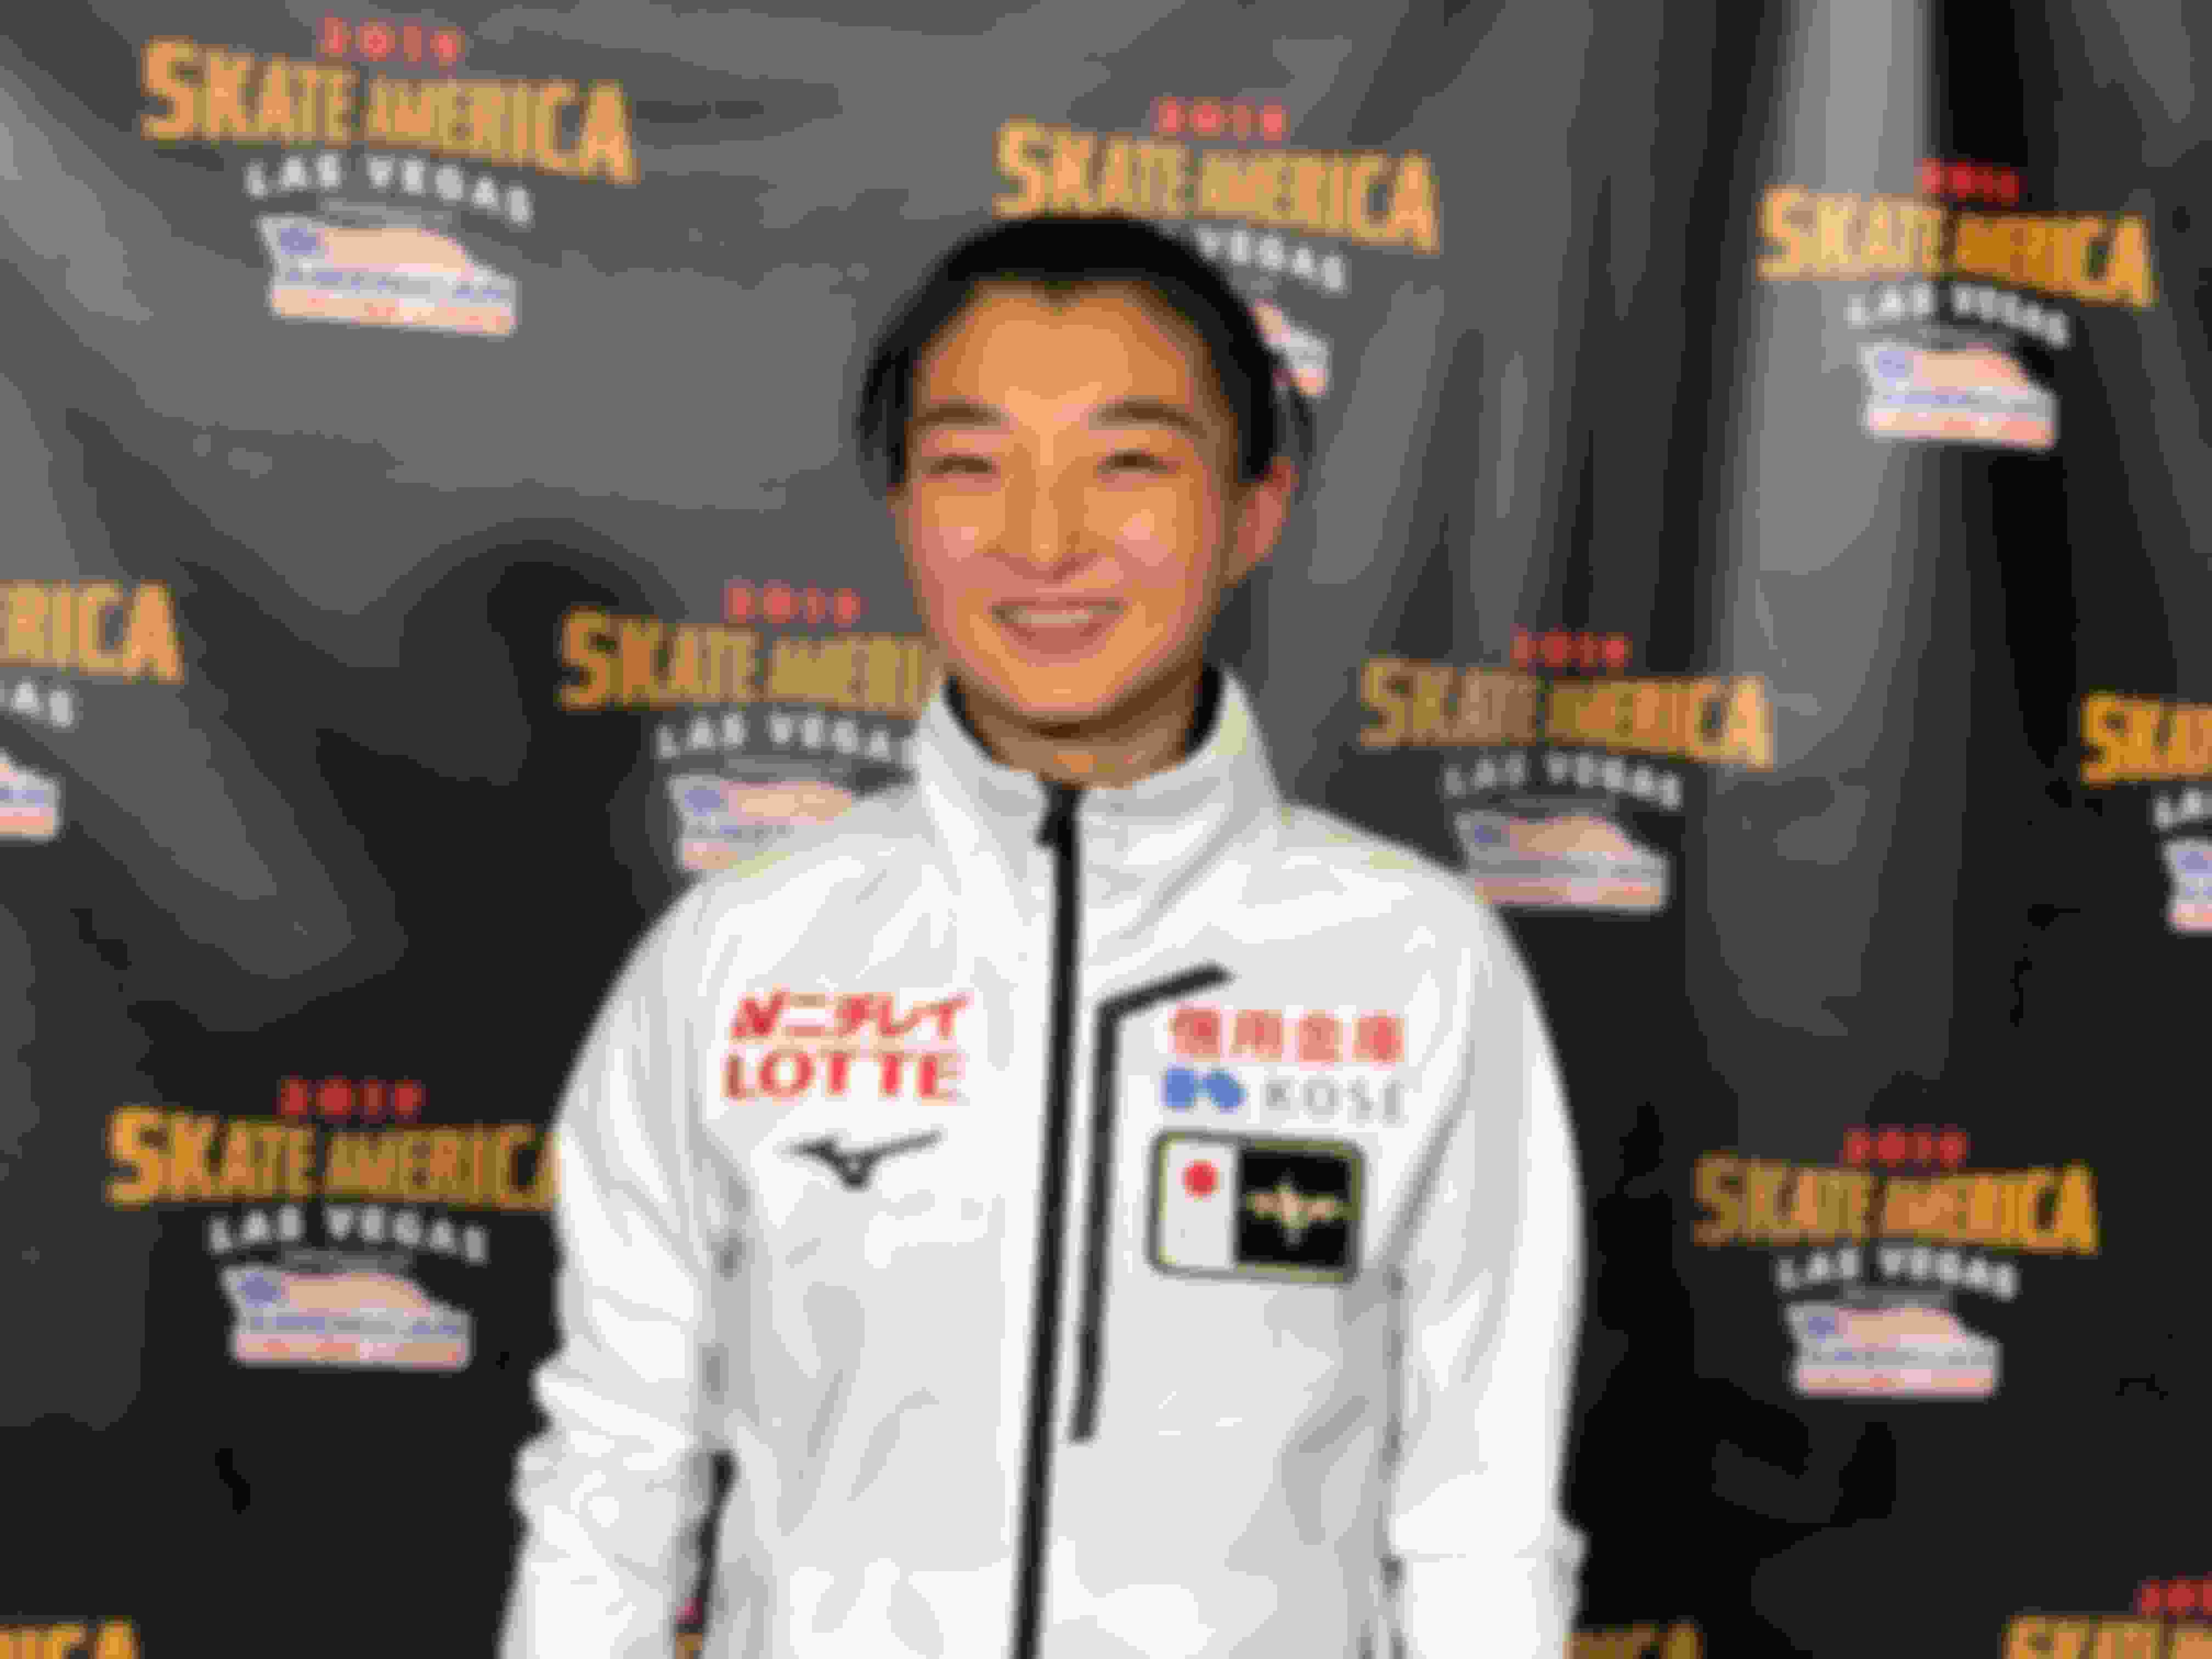 Kaori Sakamoto targets another Skate America podium